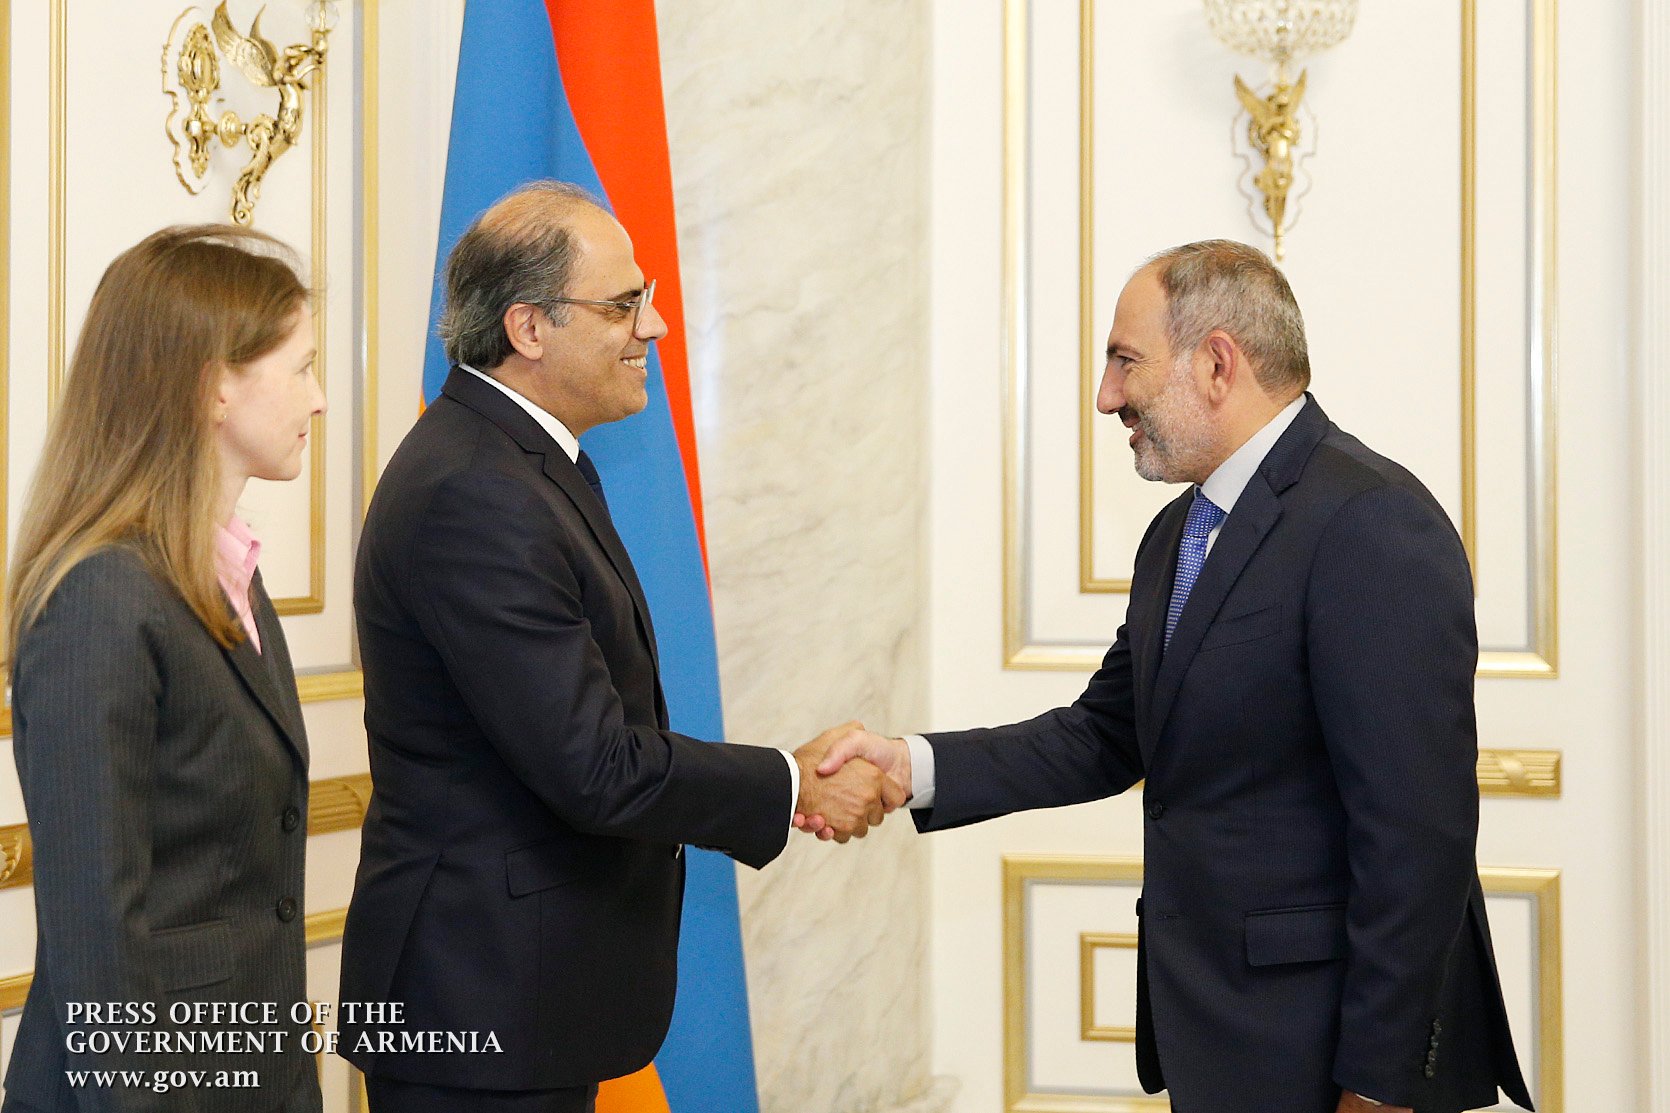 МВФ готов помочь правительству Армении в успешных реформах и экономическом прогрессе